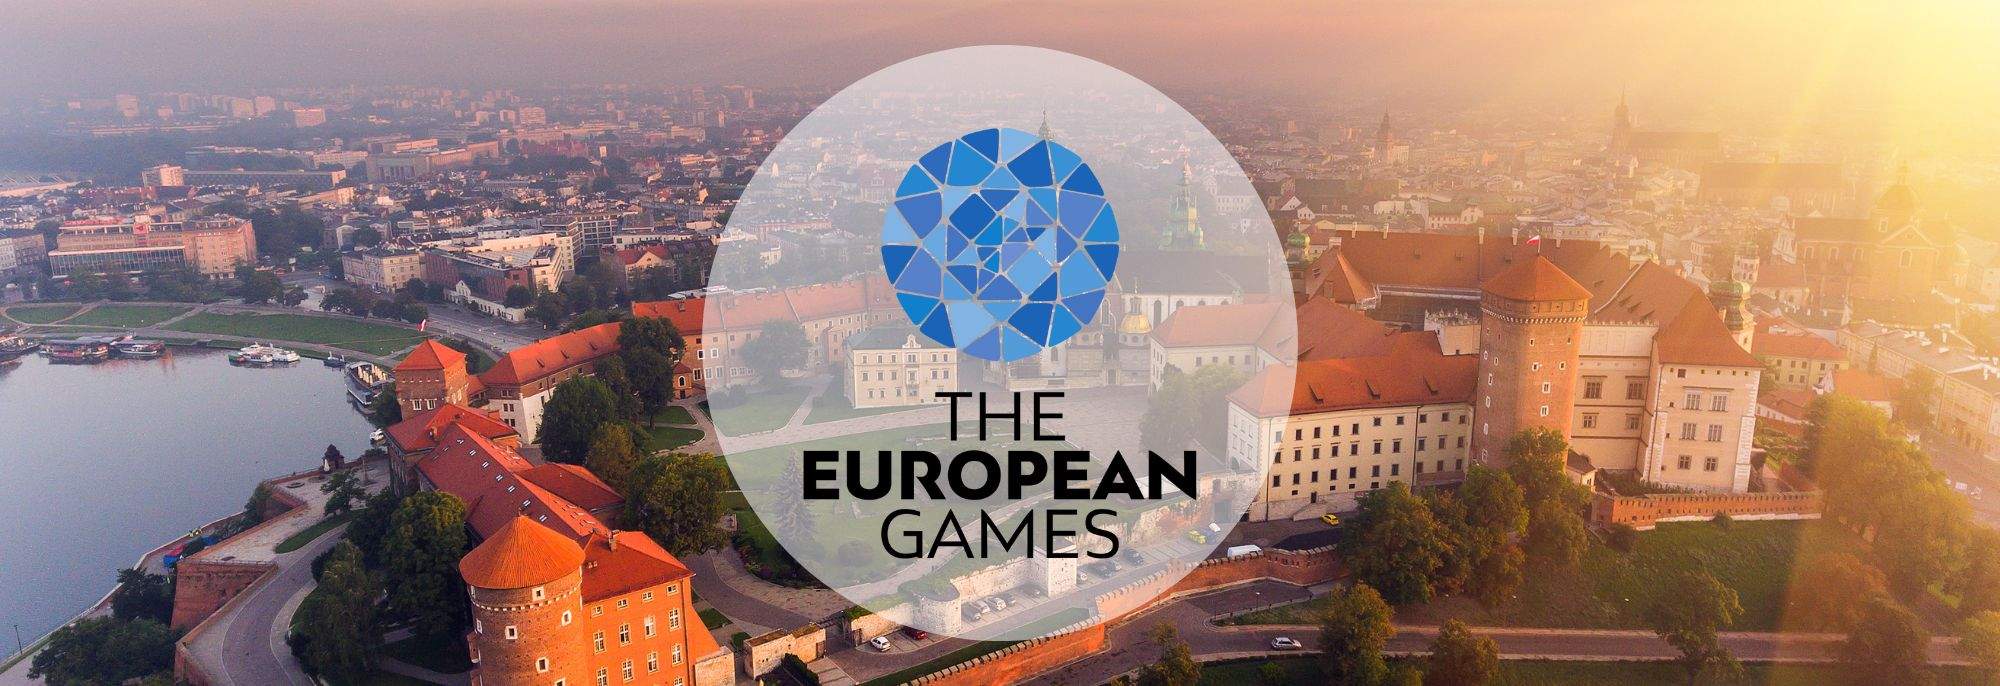 Kraków - Jouw partner voor emoties tijdens de European Games 2023